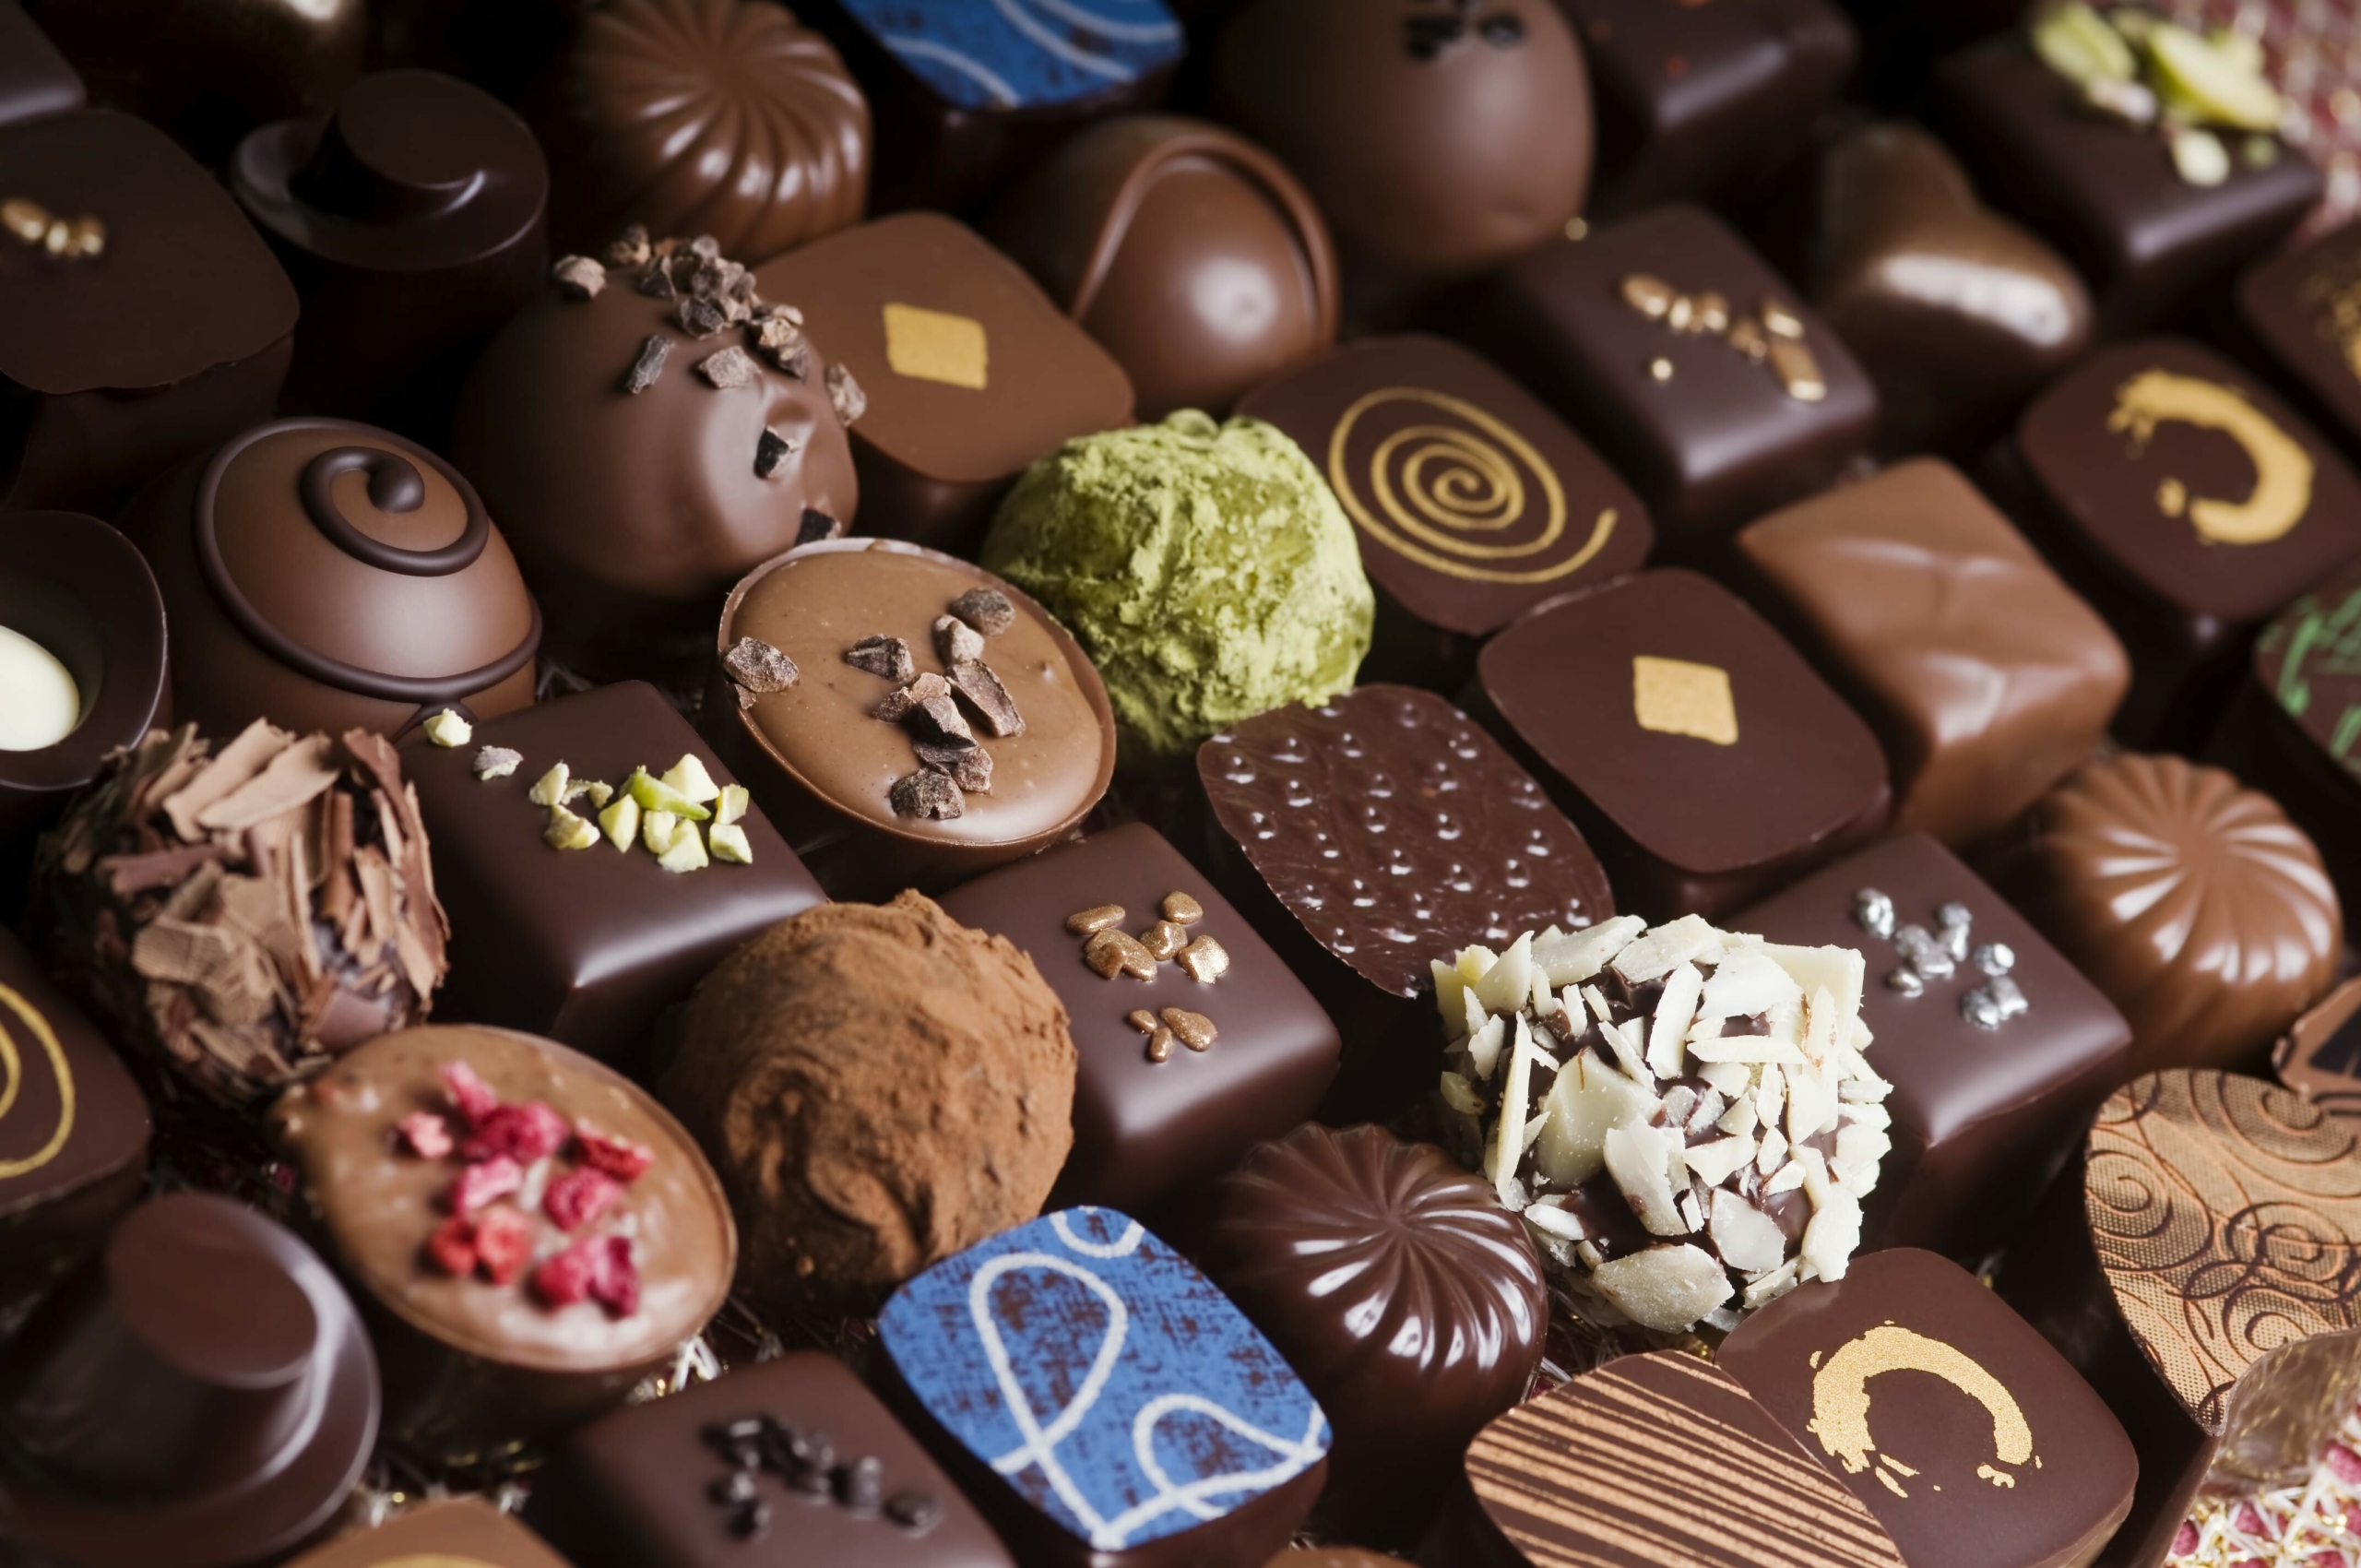 لمحبي الشوكولاتة..تعرف على أشهر 10 دول بإنتاج الشوكولاتة 